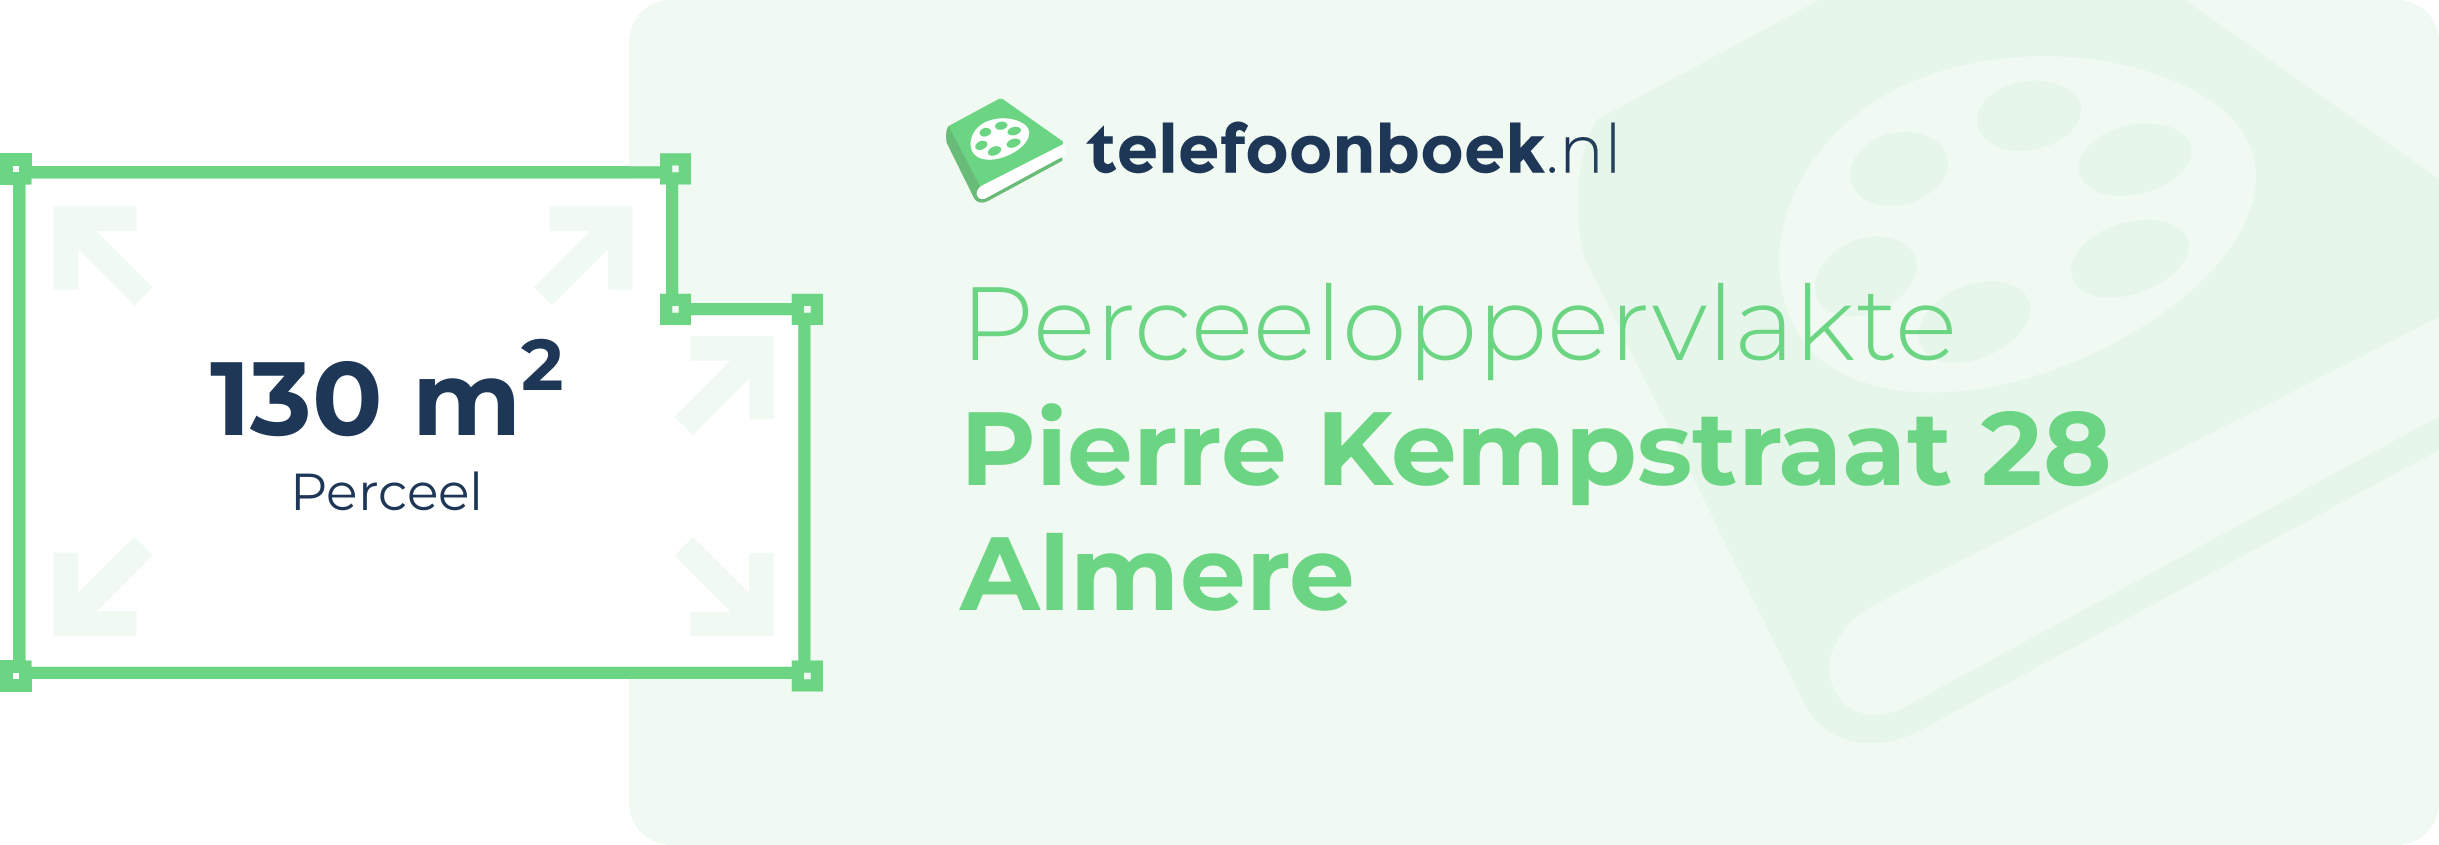 Perceeloppervlakte Pierre Kempstraat 28 Almere